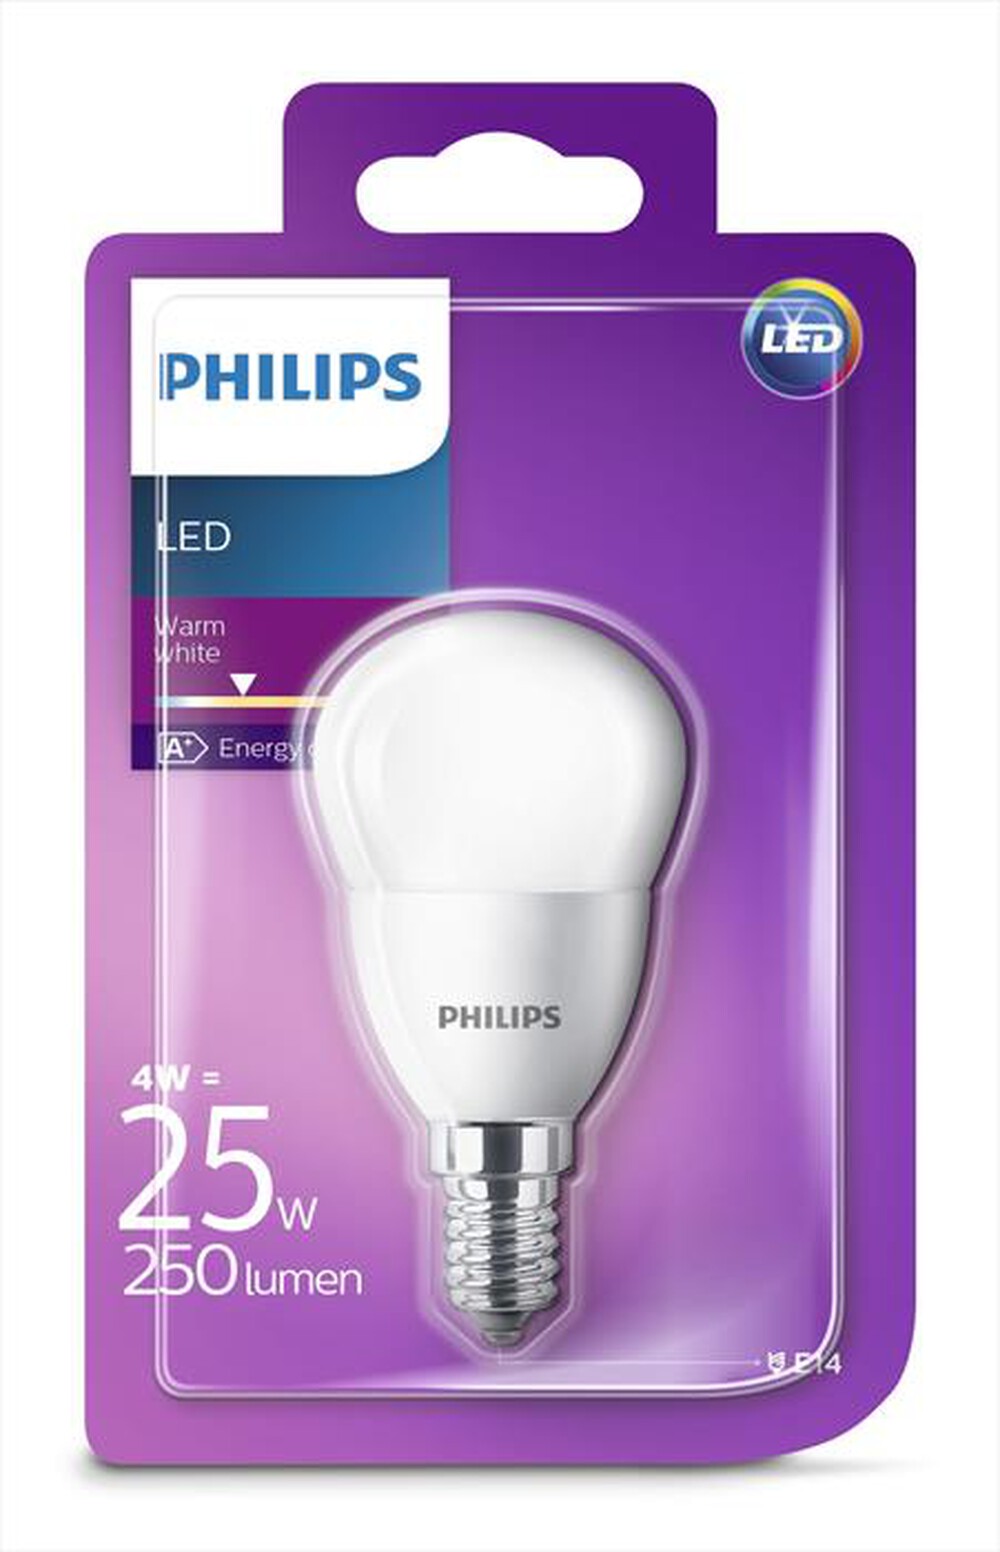 "PHILIPS - LEDSF25SME14 4W E14-Luce bianca calda"